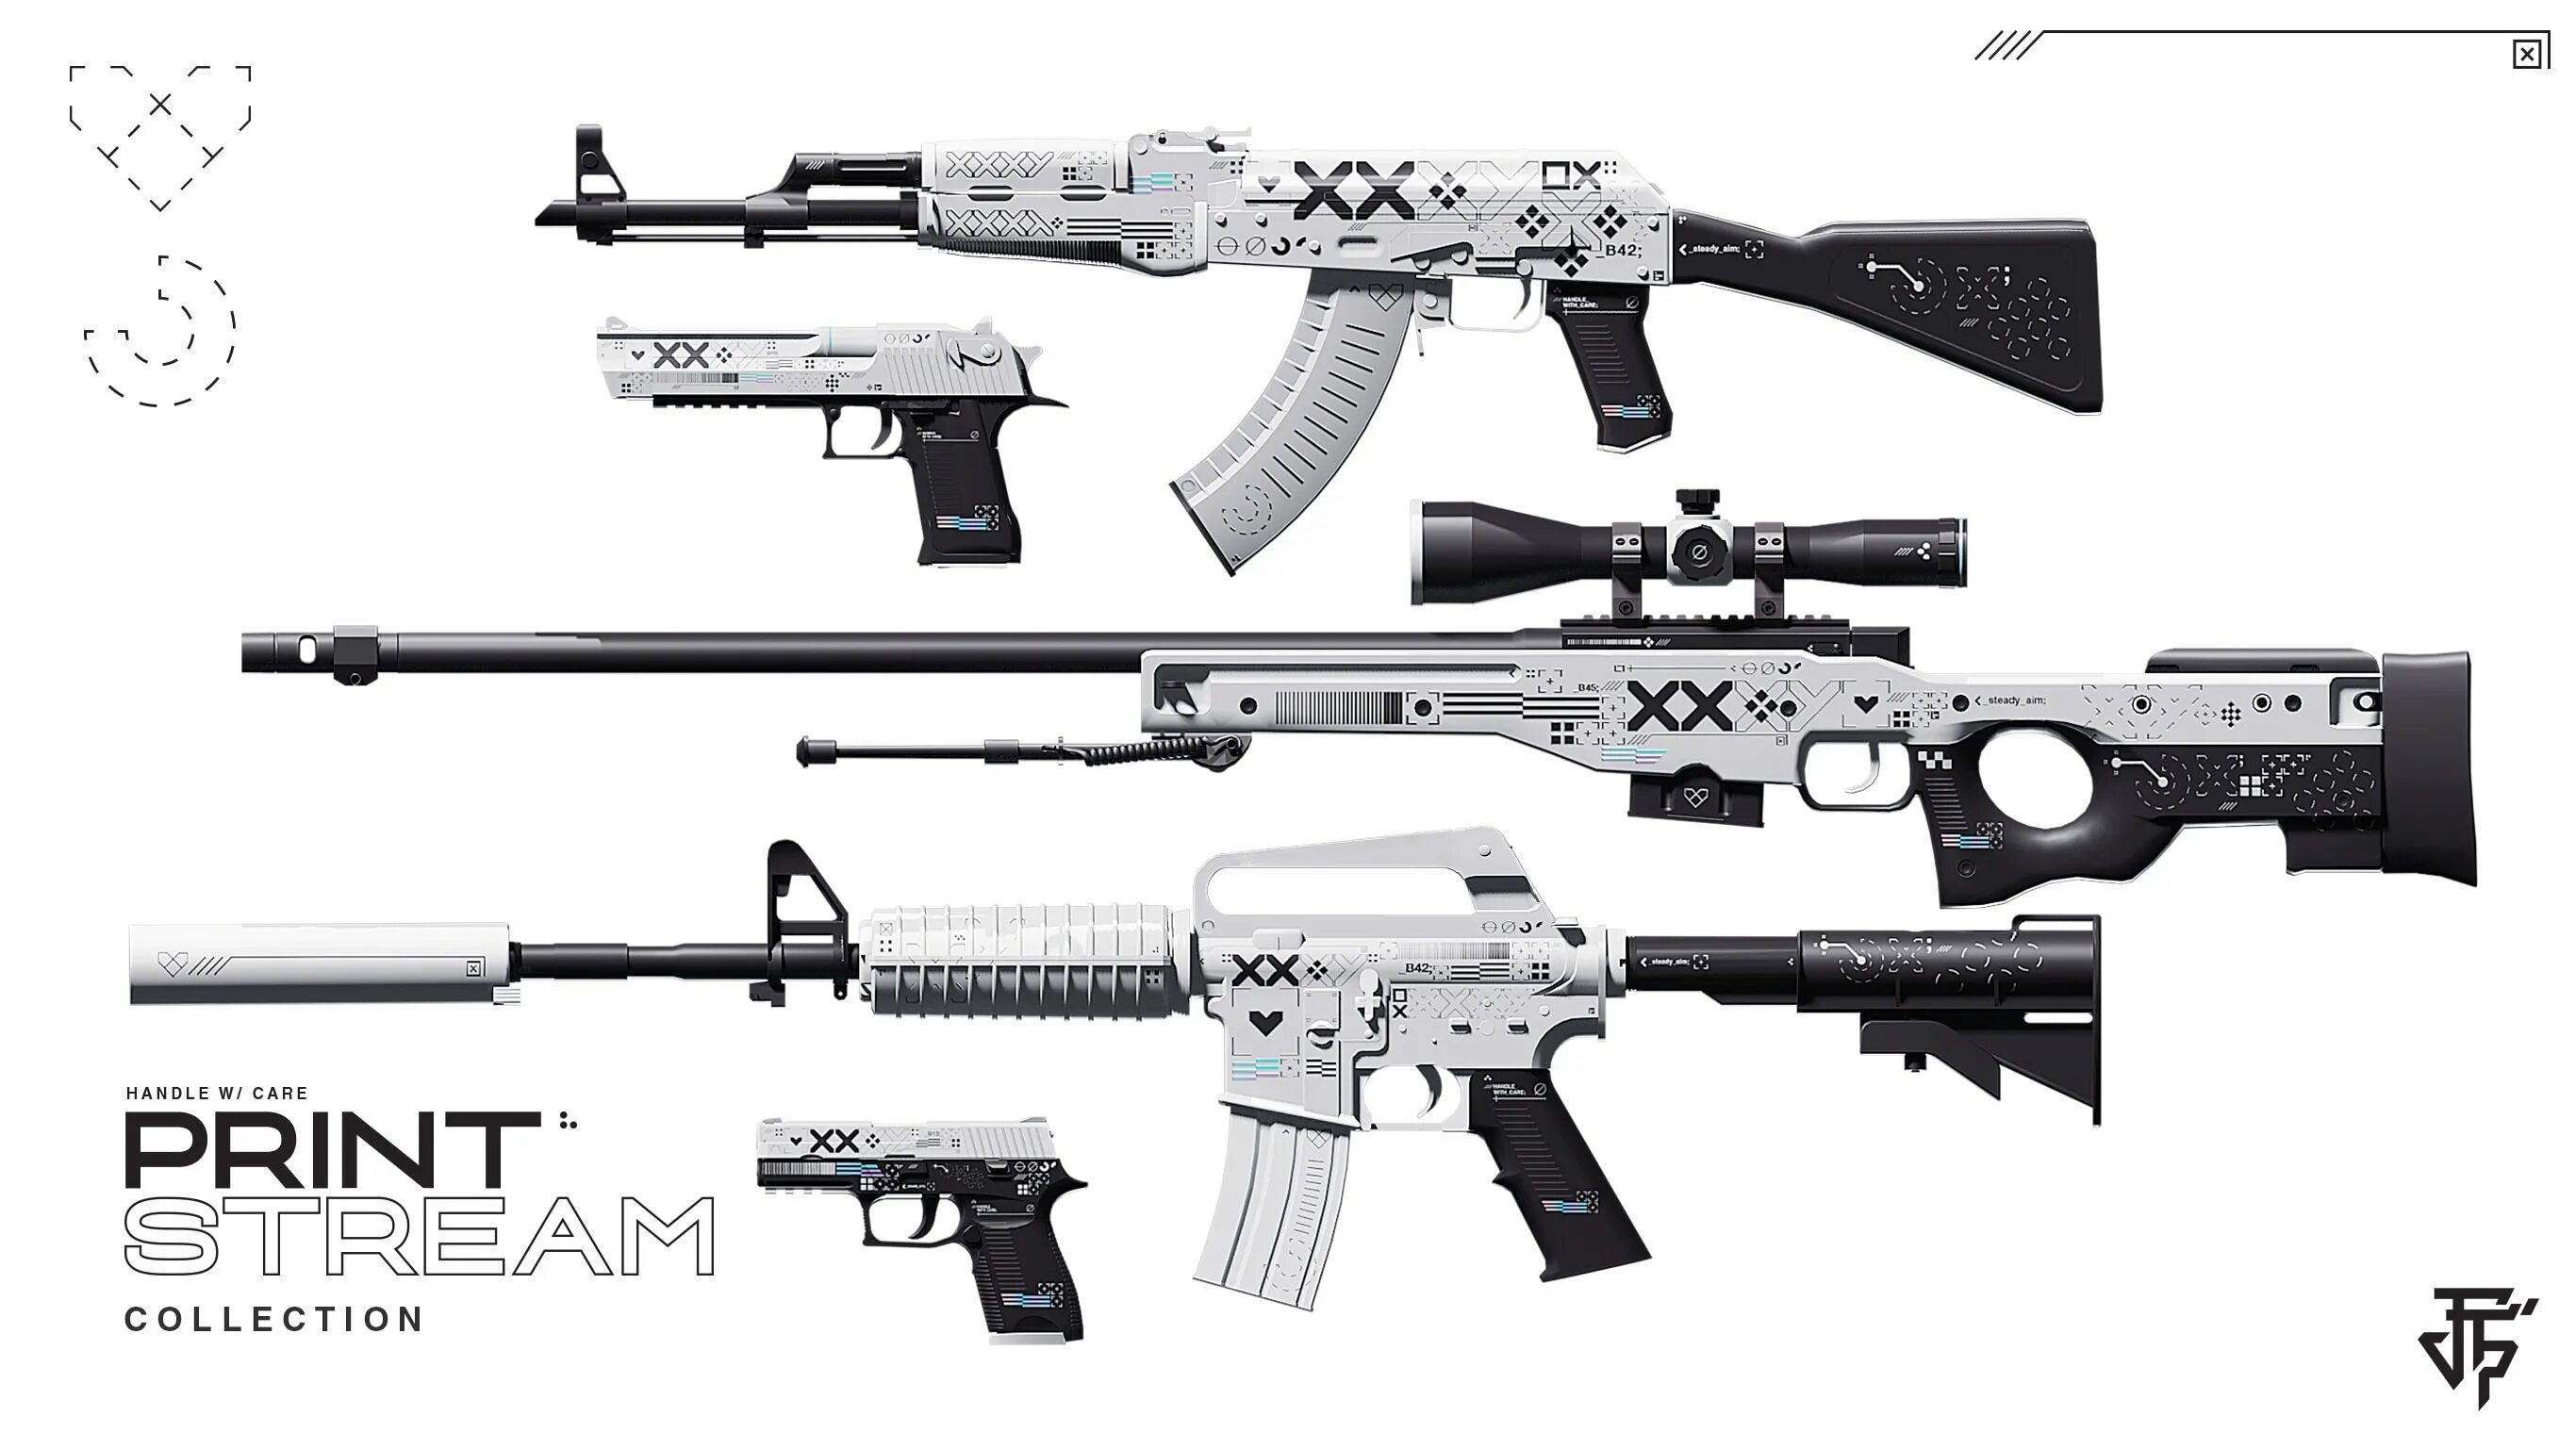 S 1м. M4a1 механо пушка. M4a1-s поток информации. M4a1-s | механо-пушка. М4 поток информации КС го.